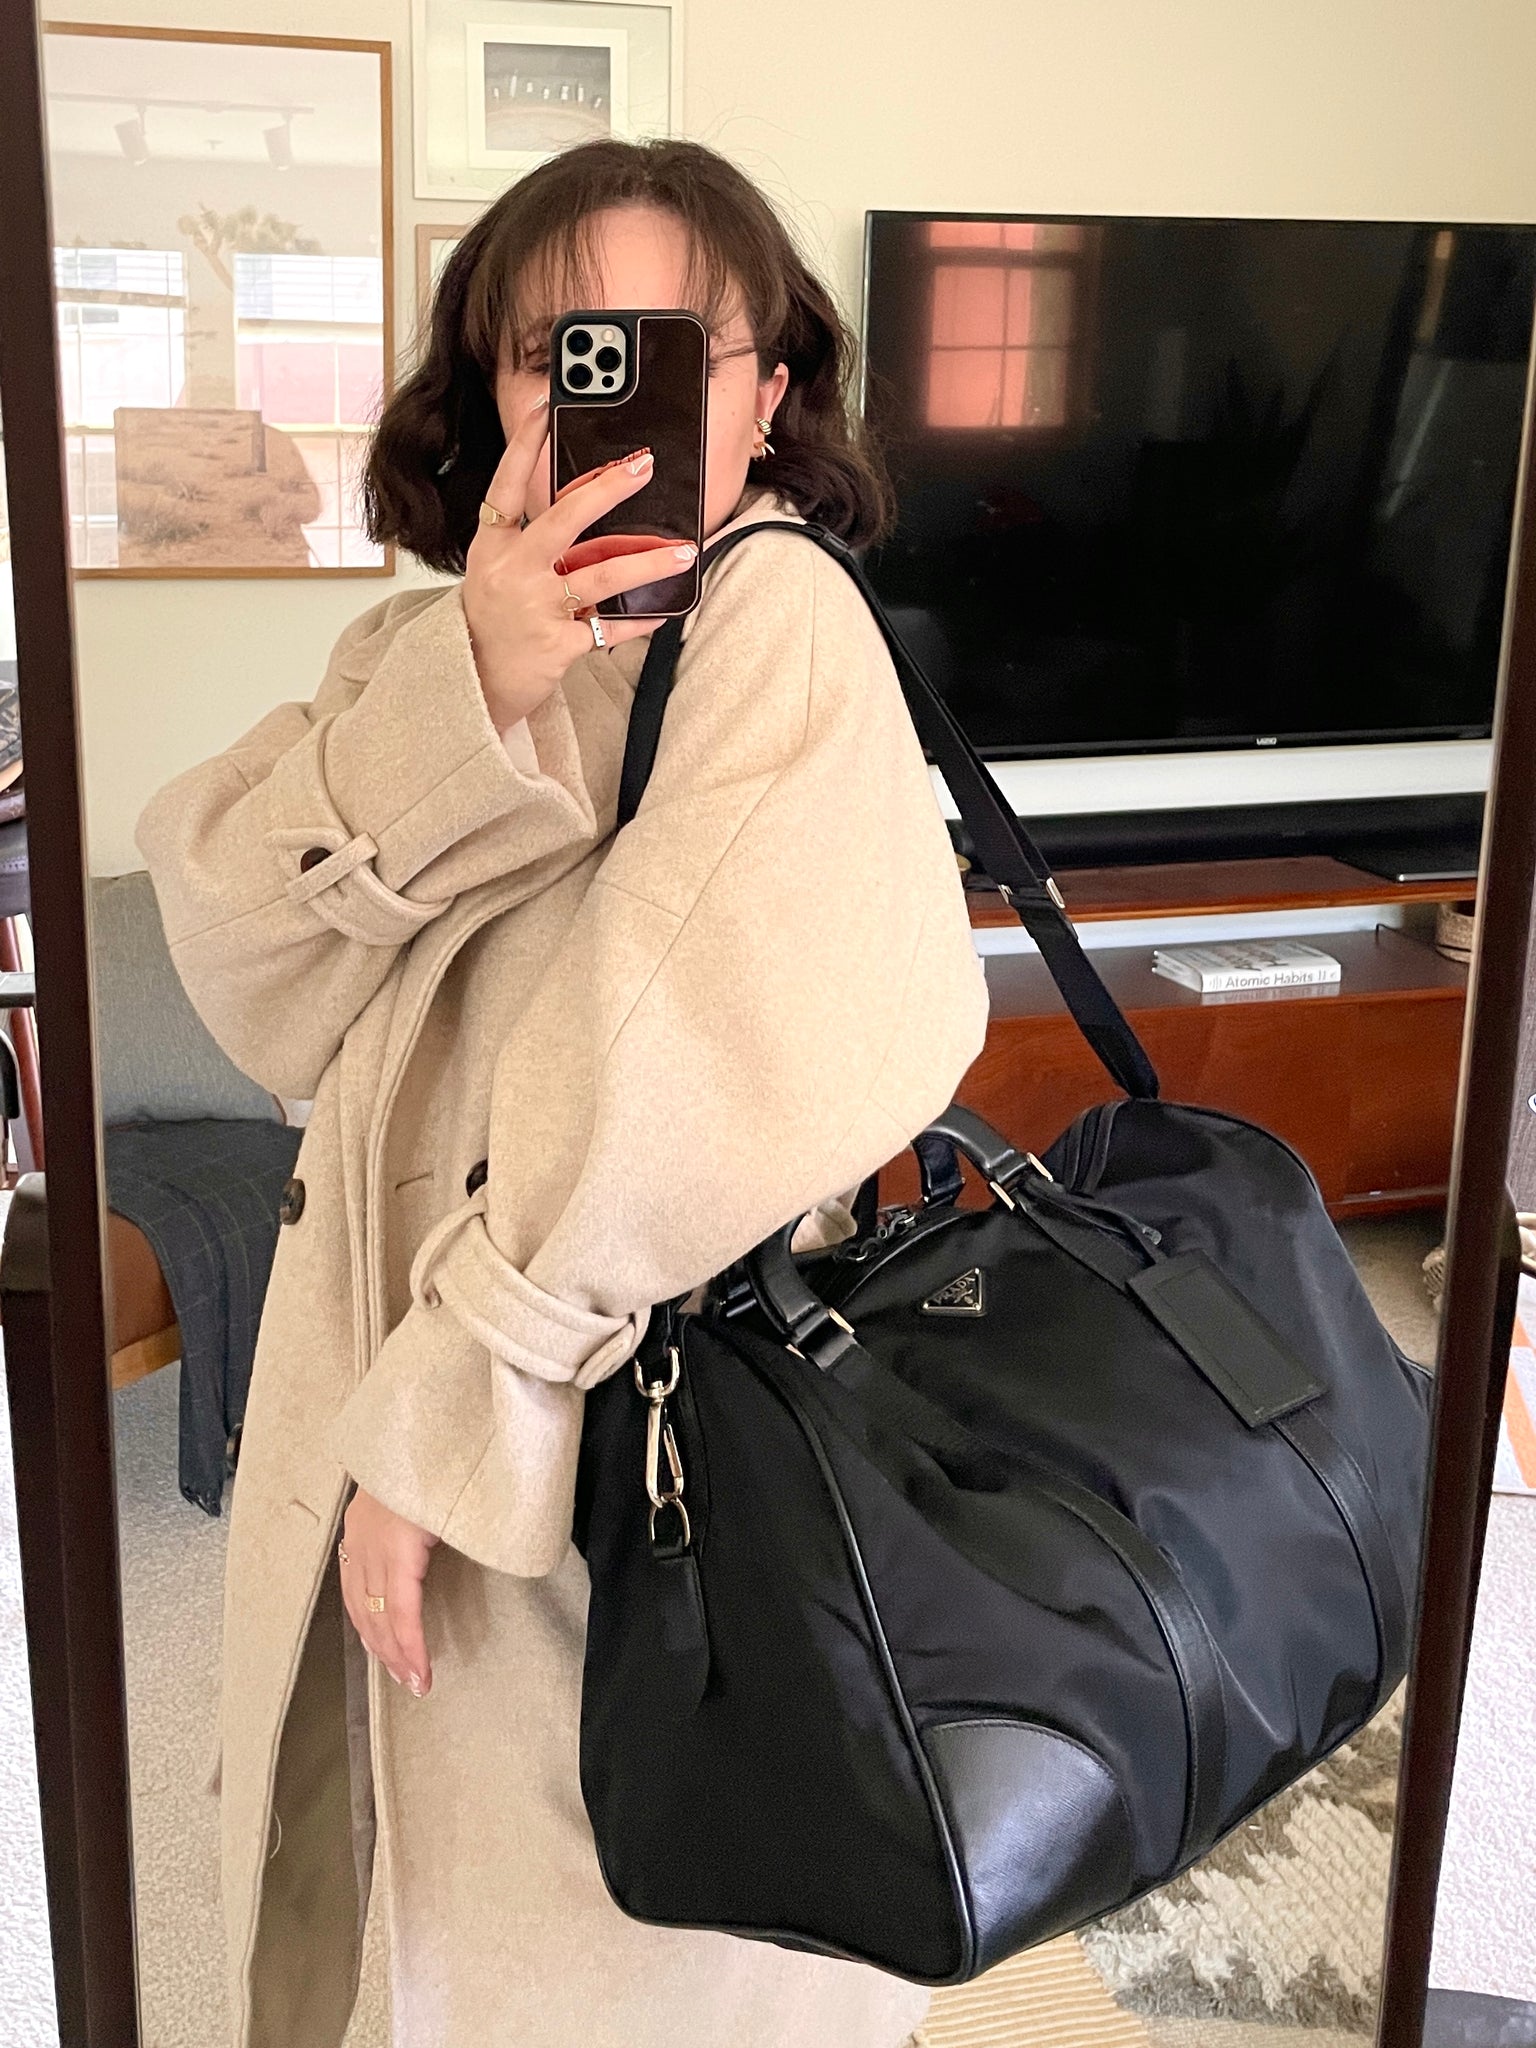 Prada Weekender Travel Bag